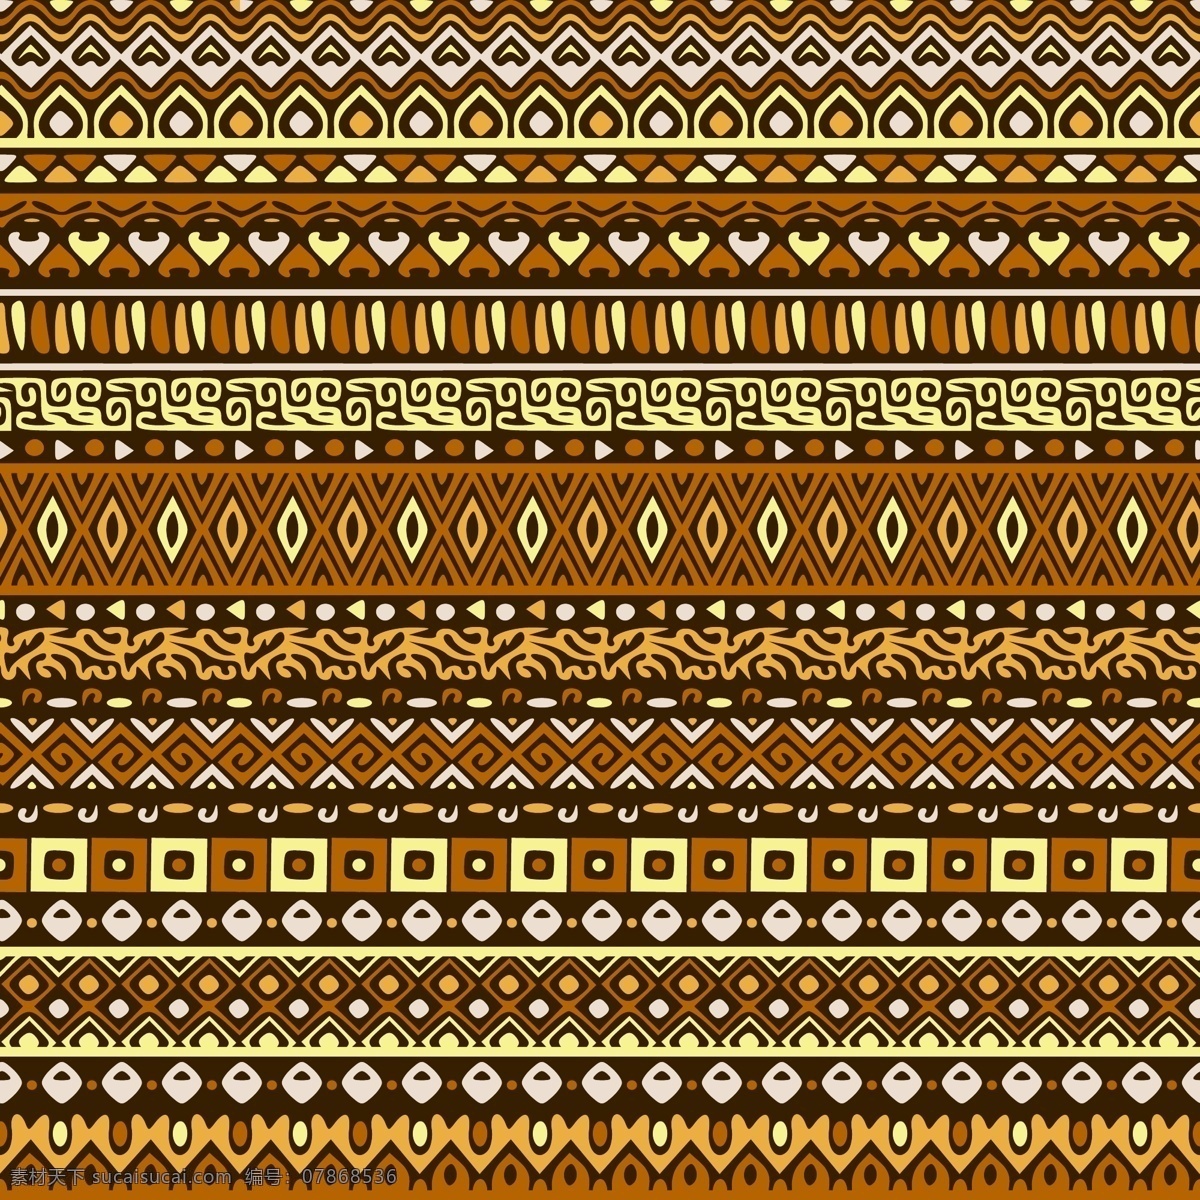 具有 抽象 形状 种族 条纹 图案 背景 模式 装饰 手绘 饰品 印度 部落 非洲 民族 观赏 无缝 古董 纺织品 传统 嬉皮士 阿兹特克